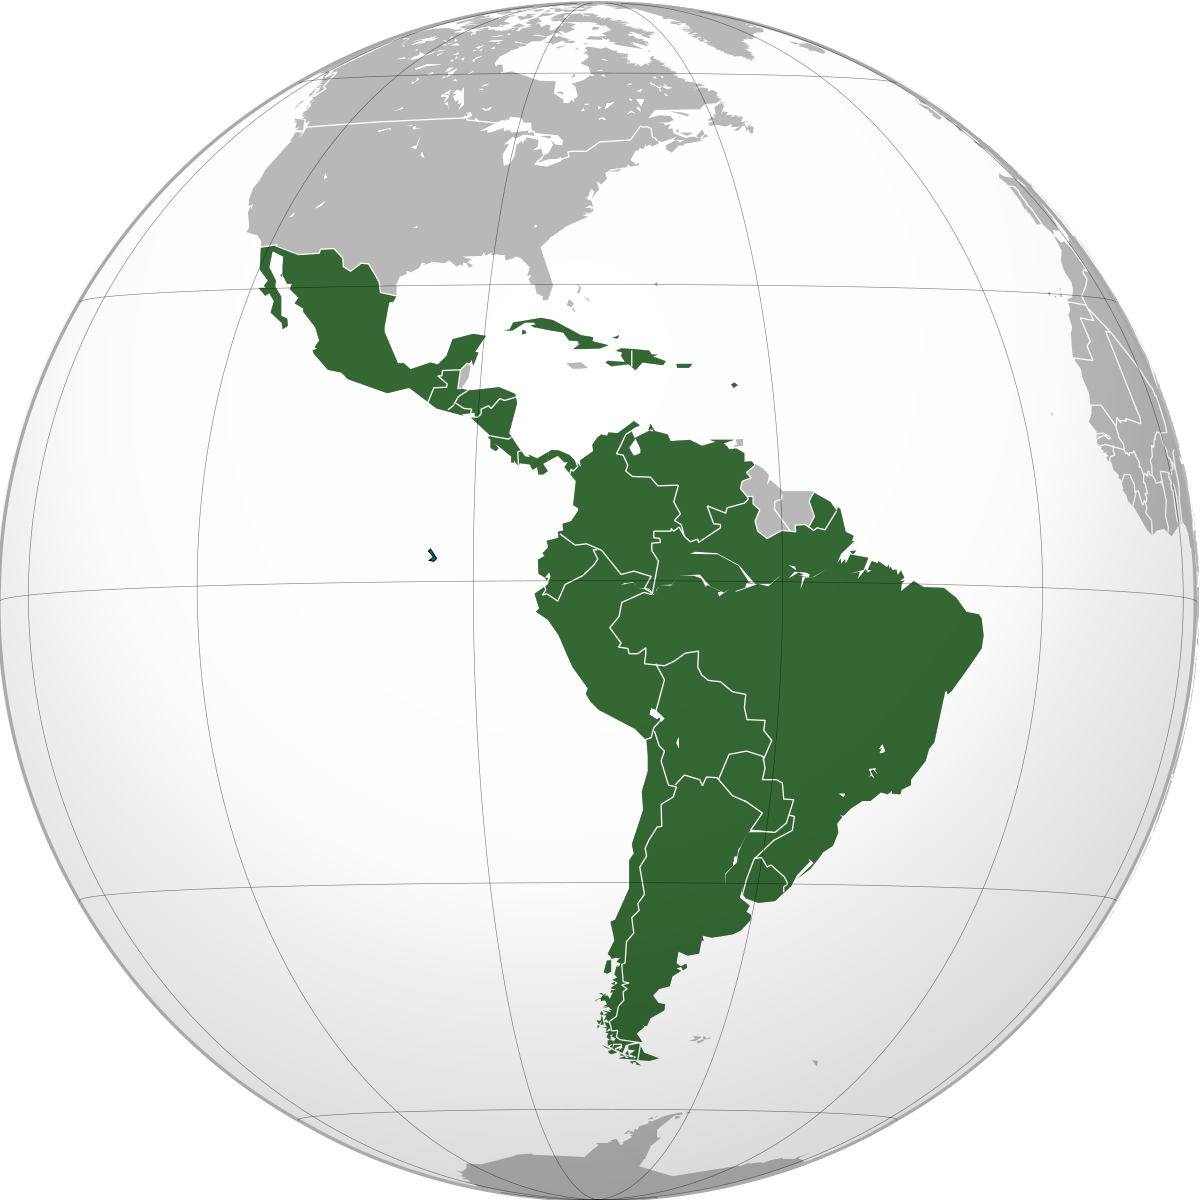 räntemarknaderna i Brasilien som aktiemarknaderna i Chile och Mexiko. Det tar dessutom upp både aktiva och passiva fonder i Latinamerika.